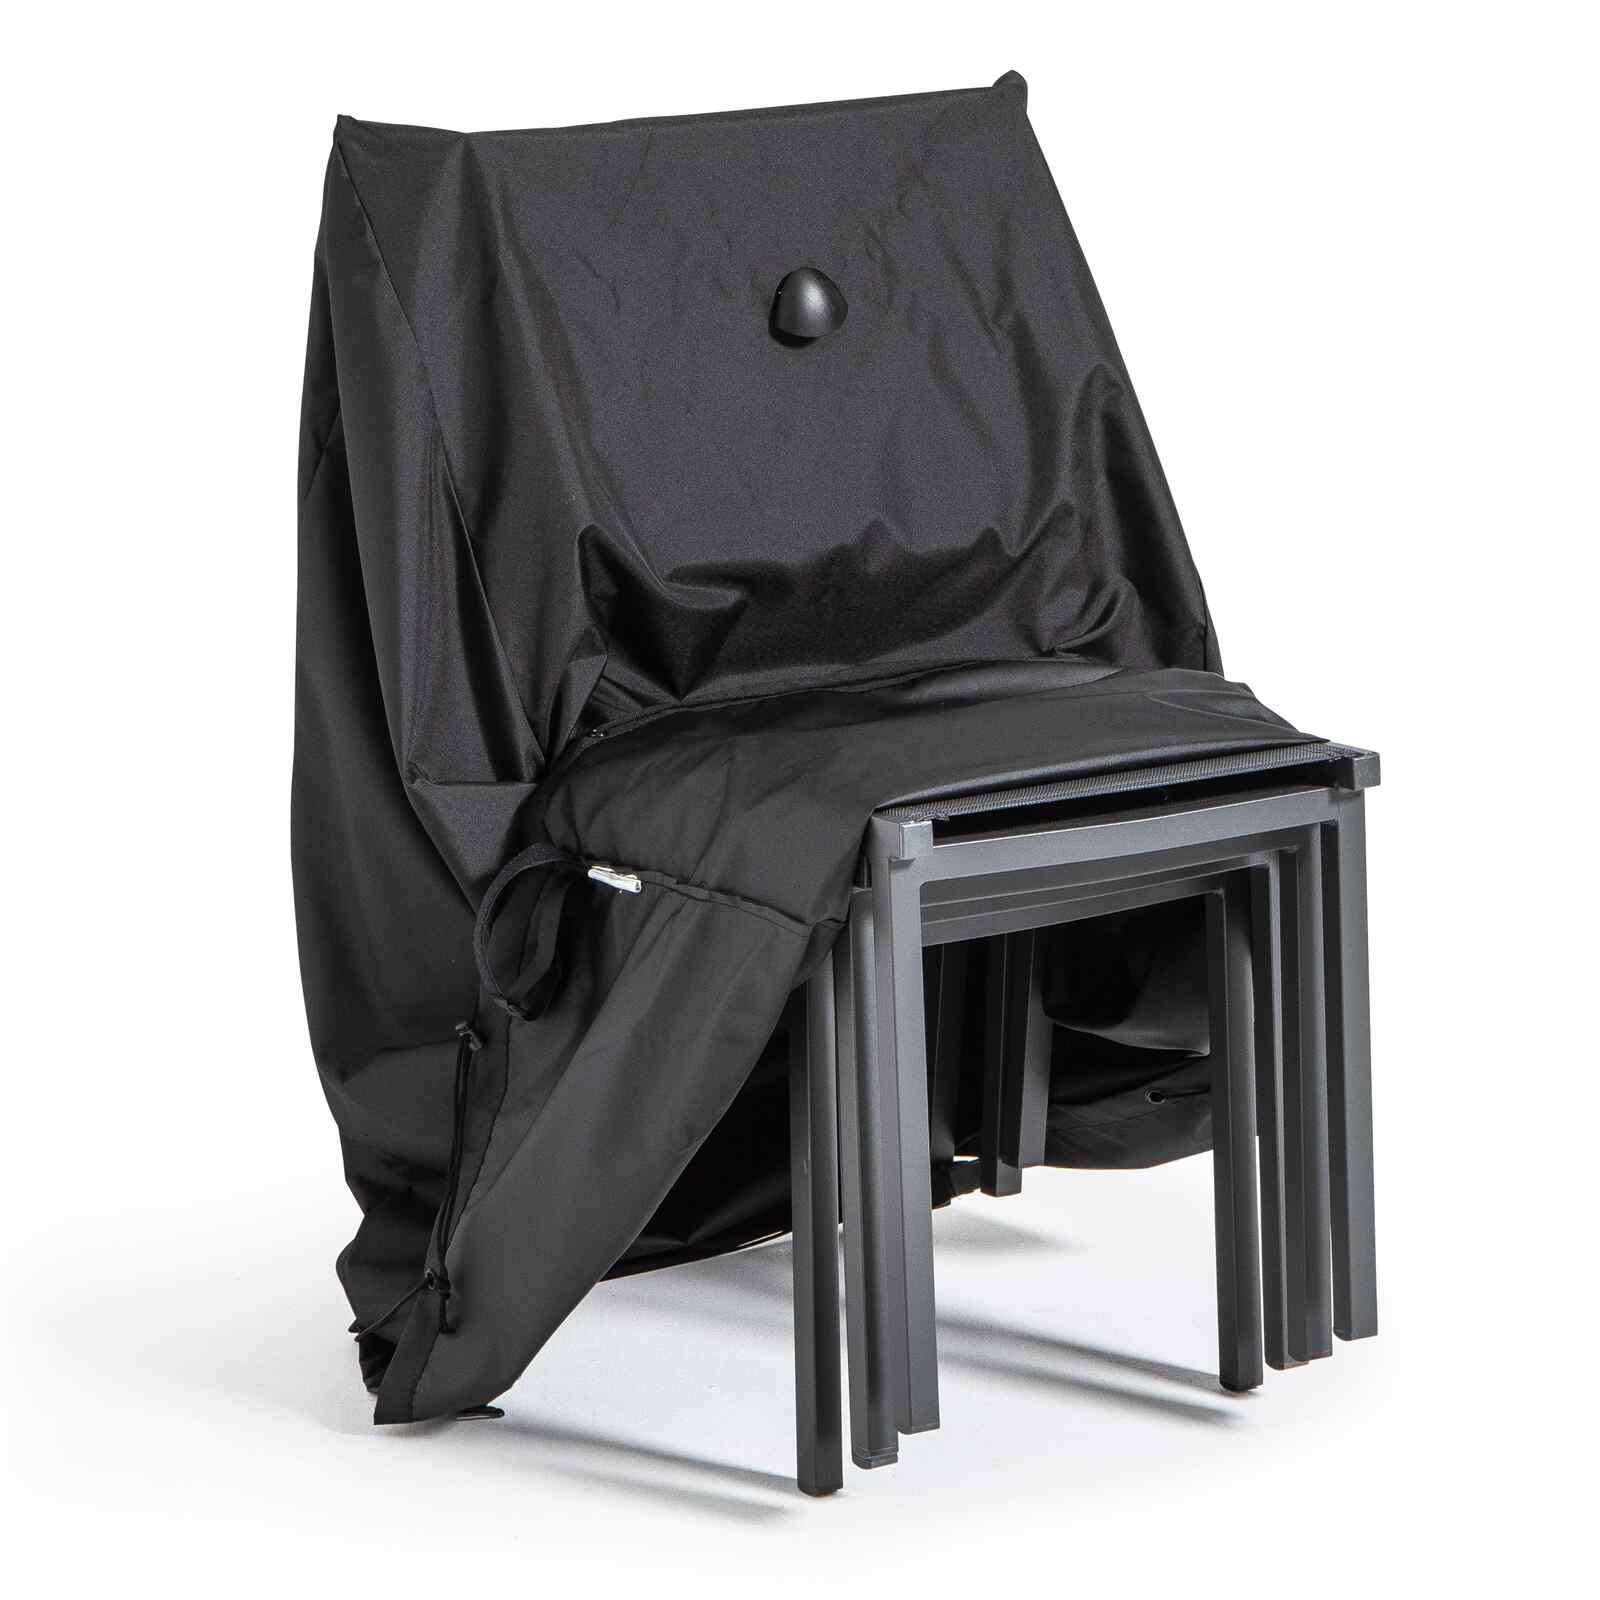 Housse de protection pour chaises de jardin L70 x l65 x h70 My Housse